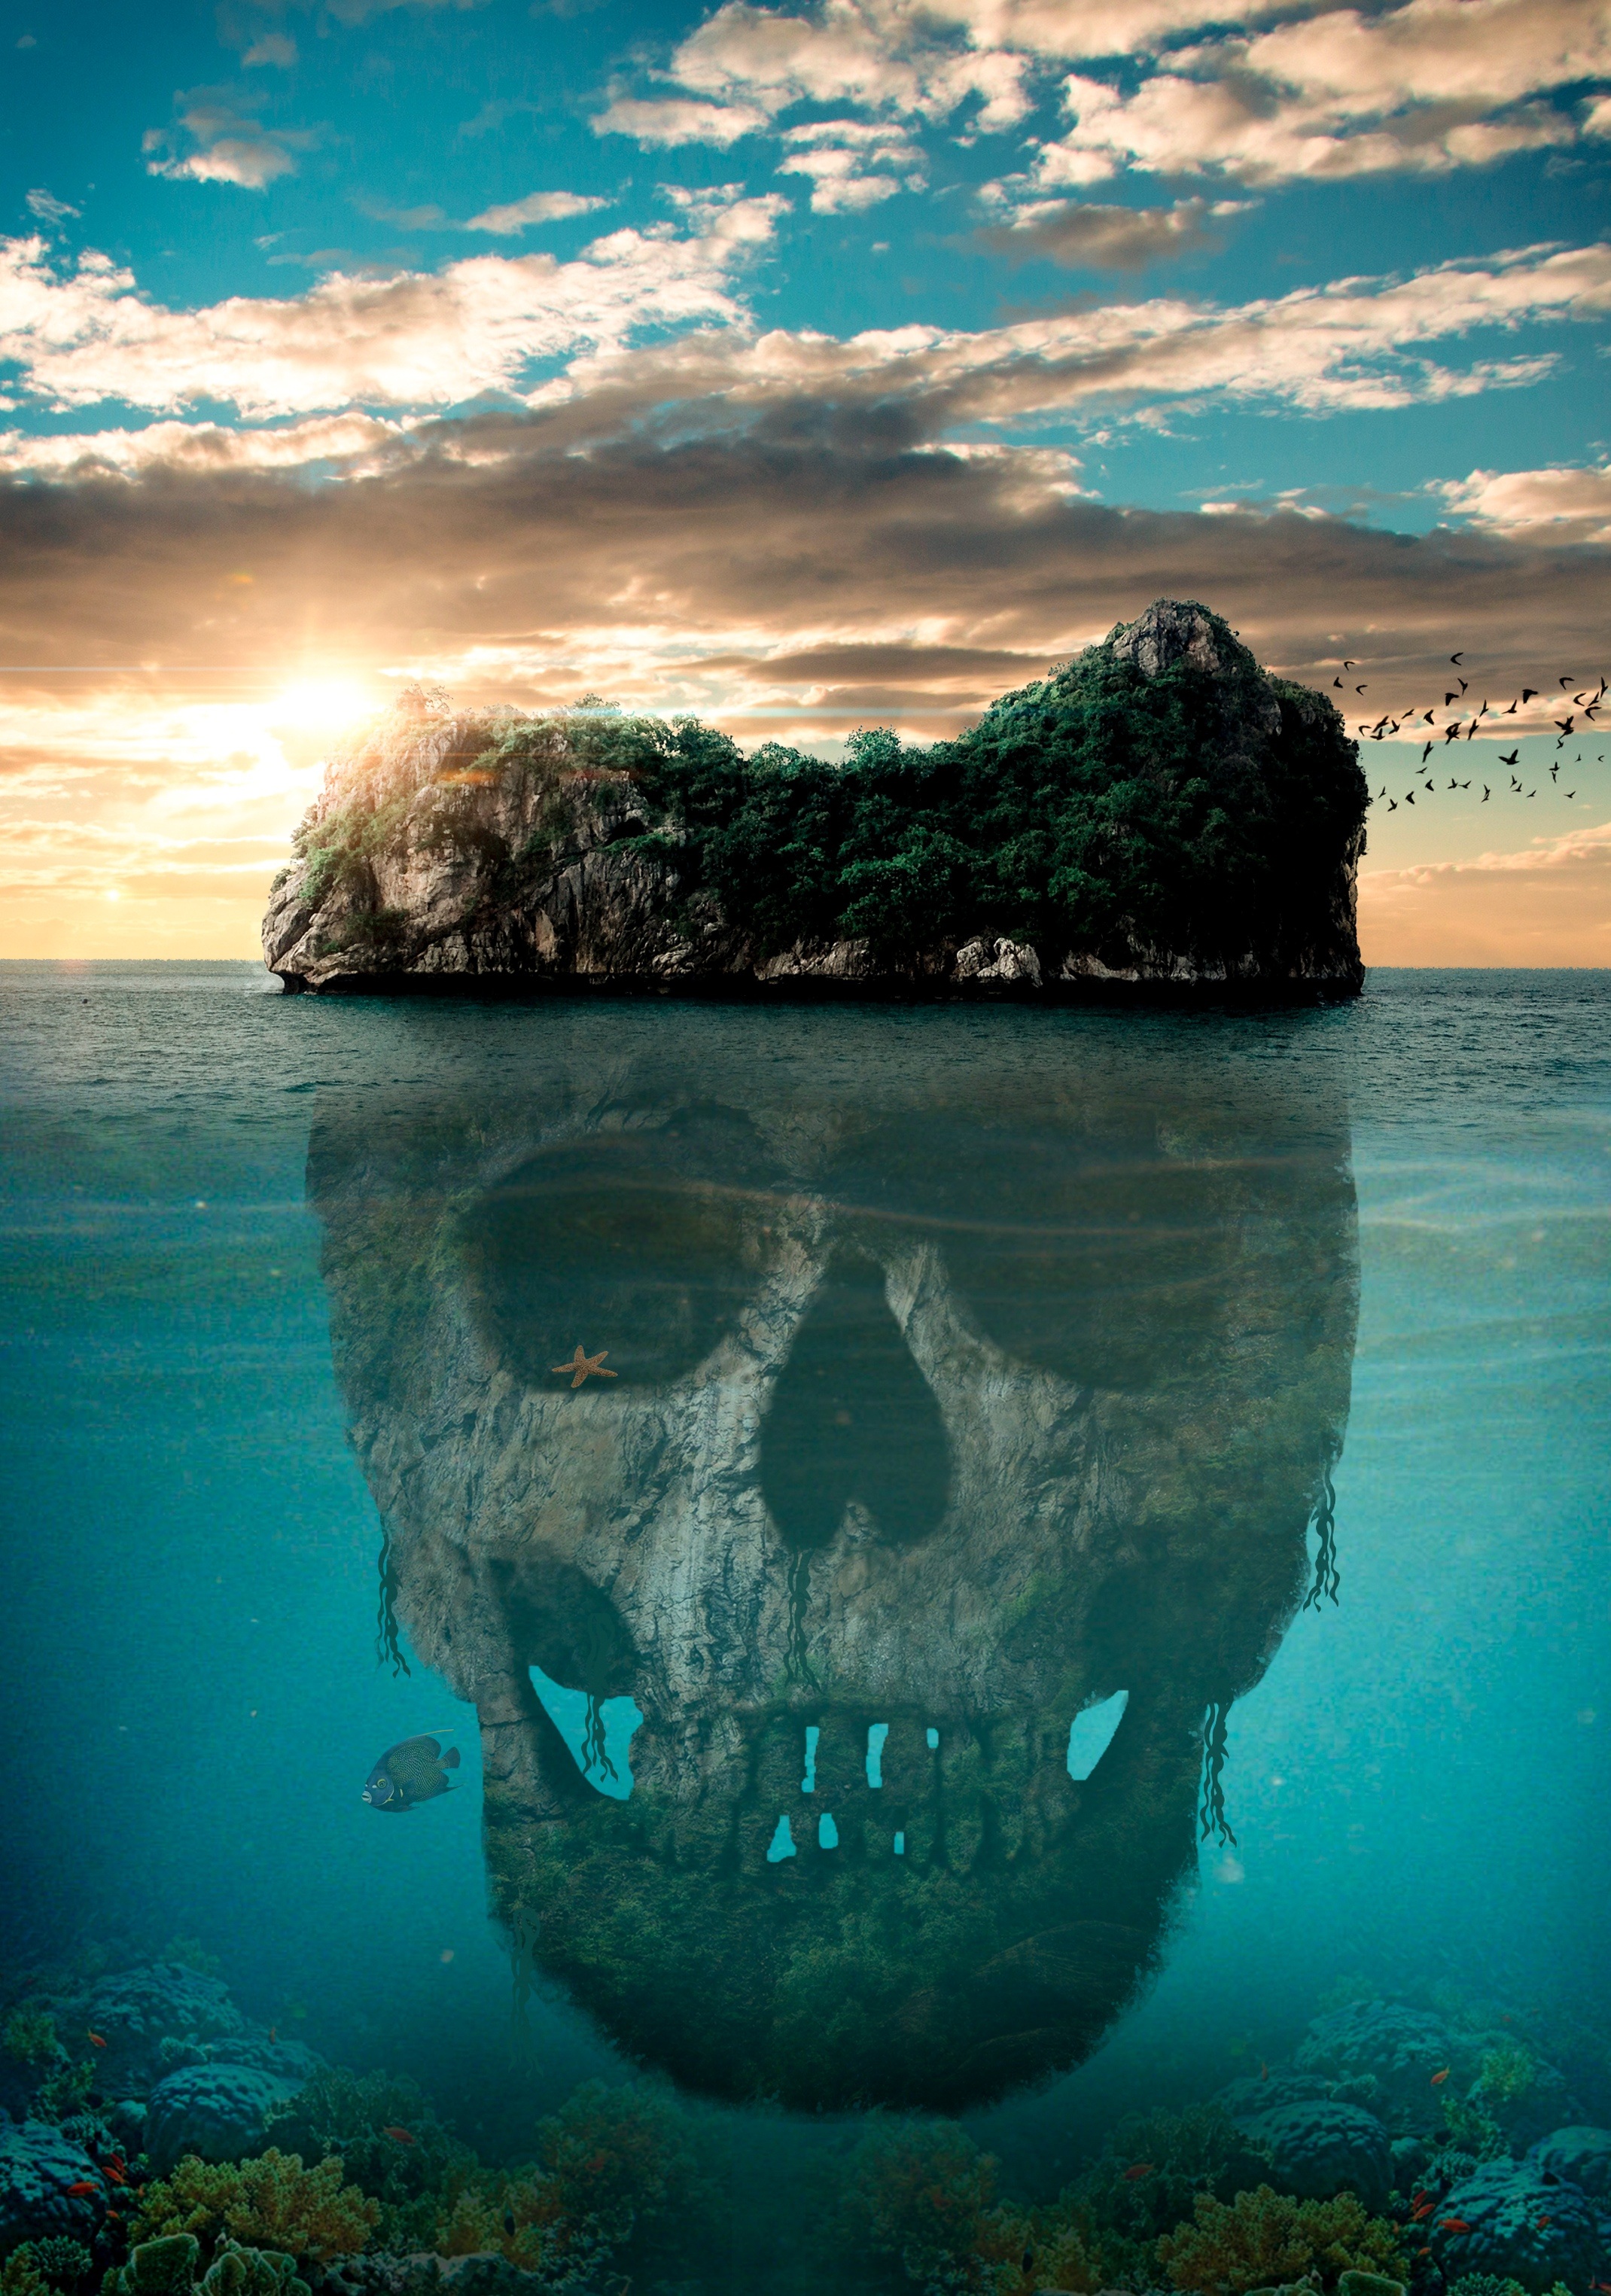 Skull HD Smartphone Background. mystic, skull, fantasy, ocean, island, myst...